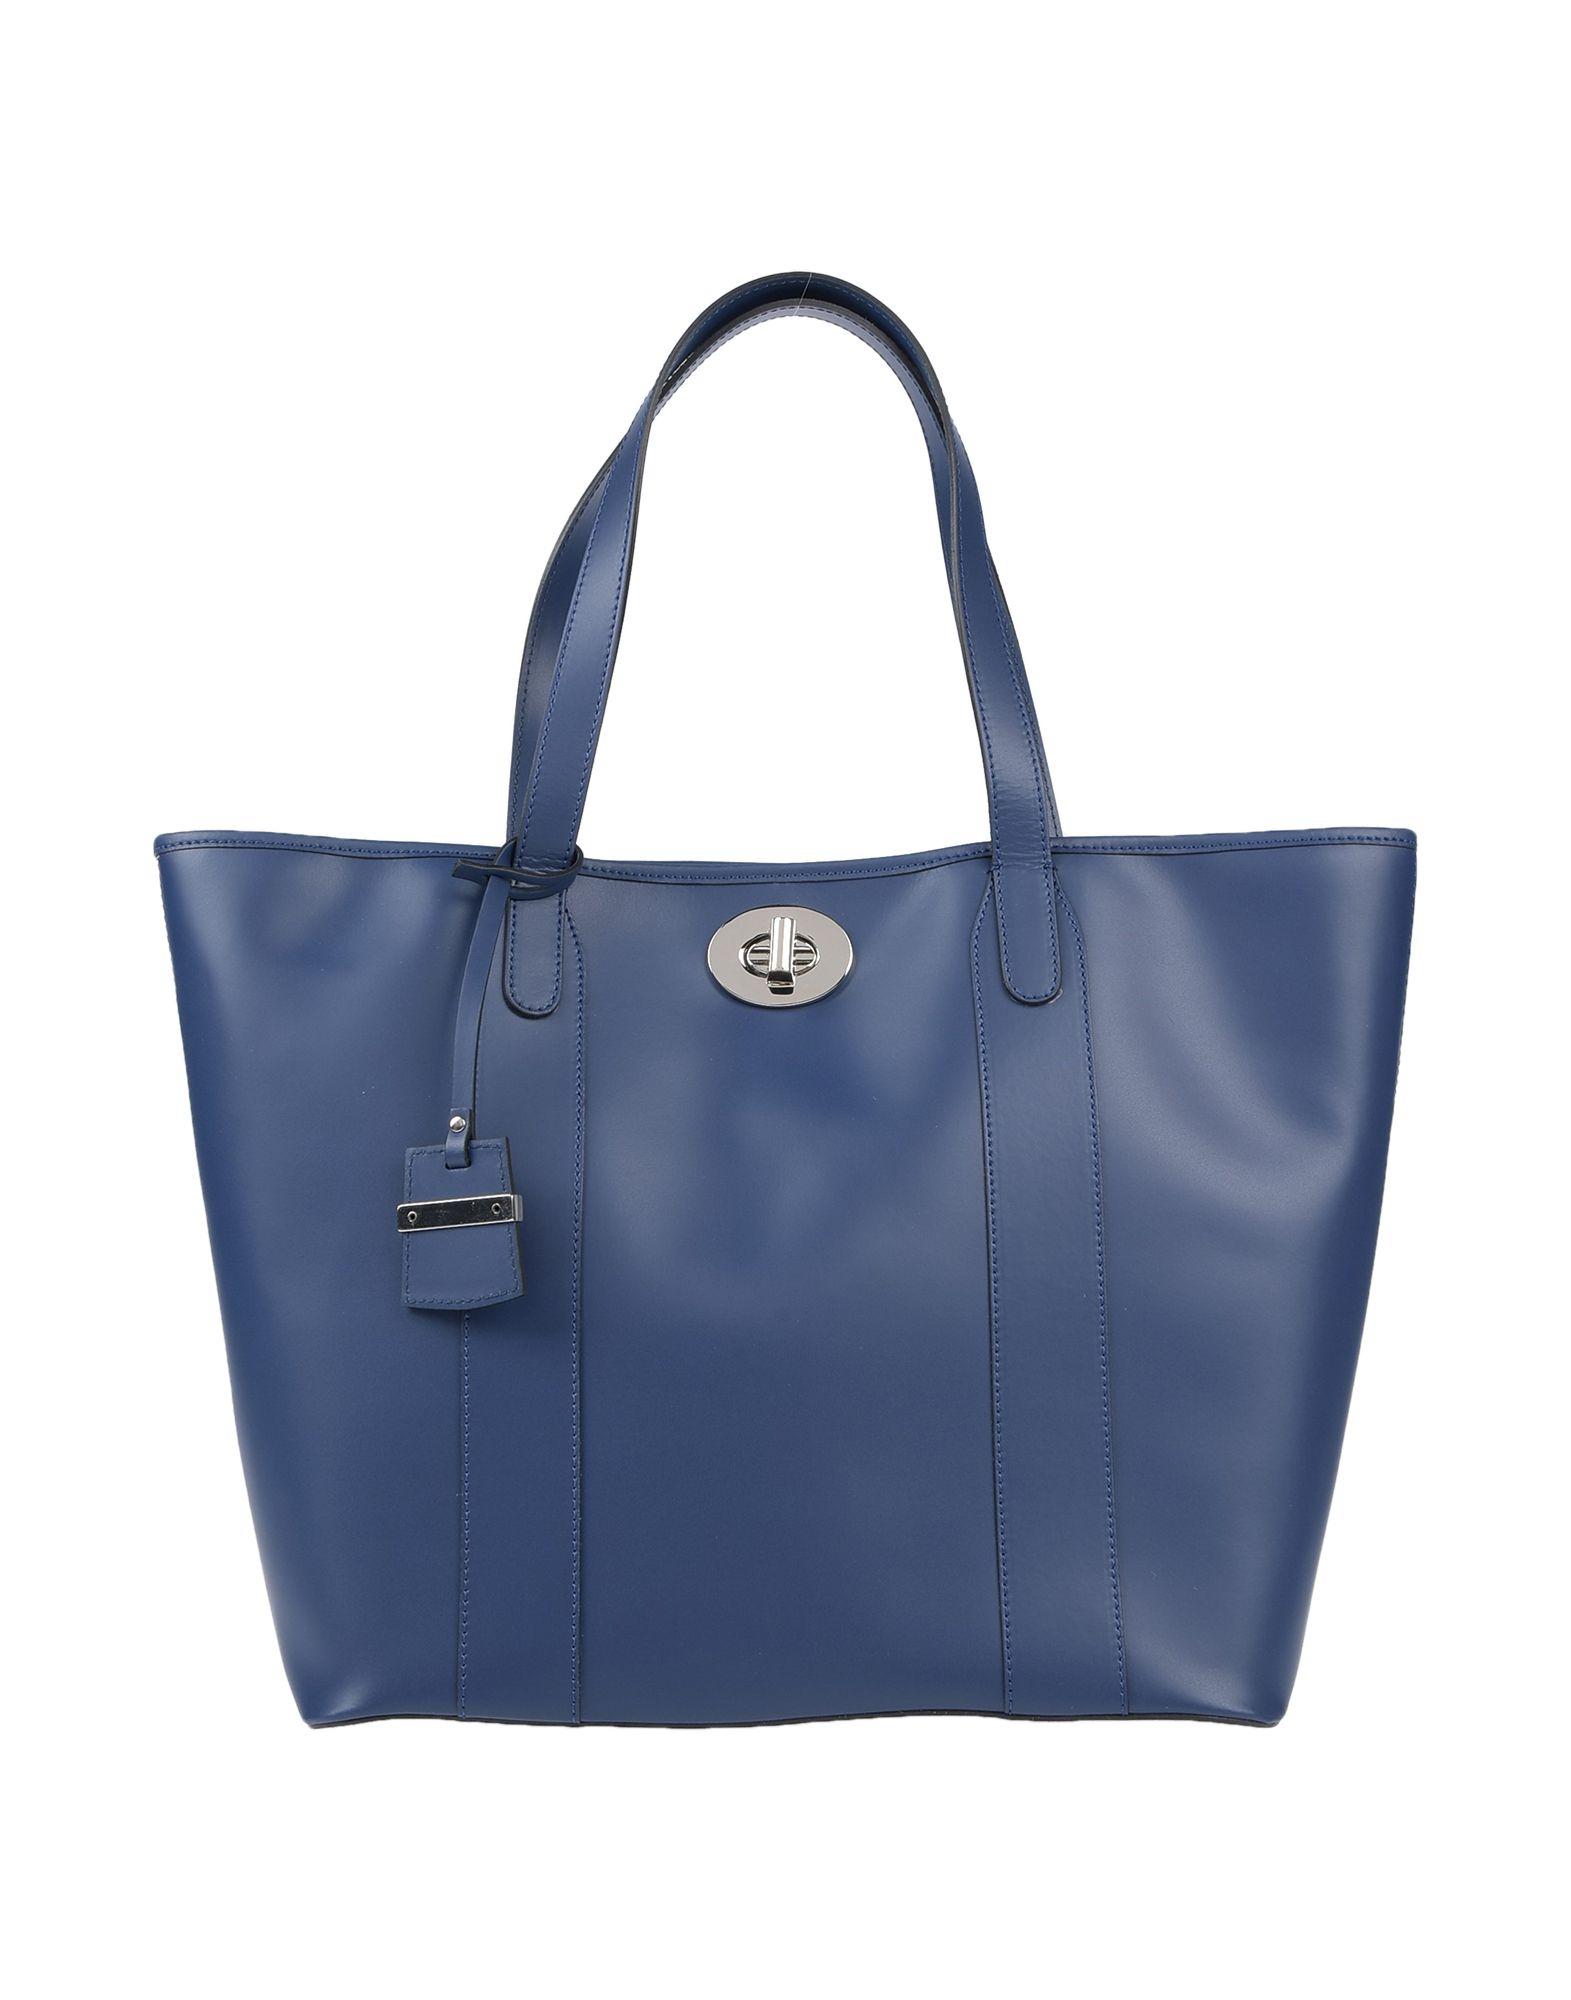 Ab Asia Bellucci Handbag in Blue - Lyst